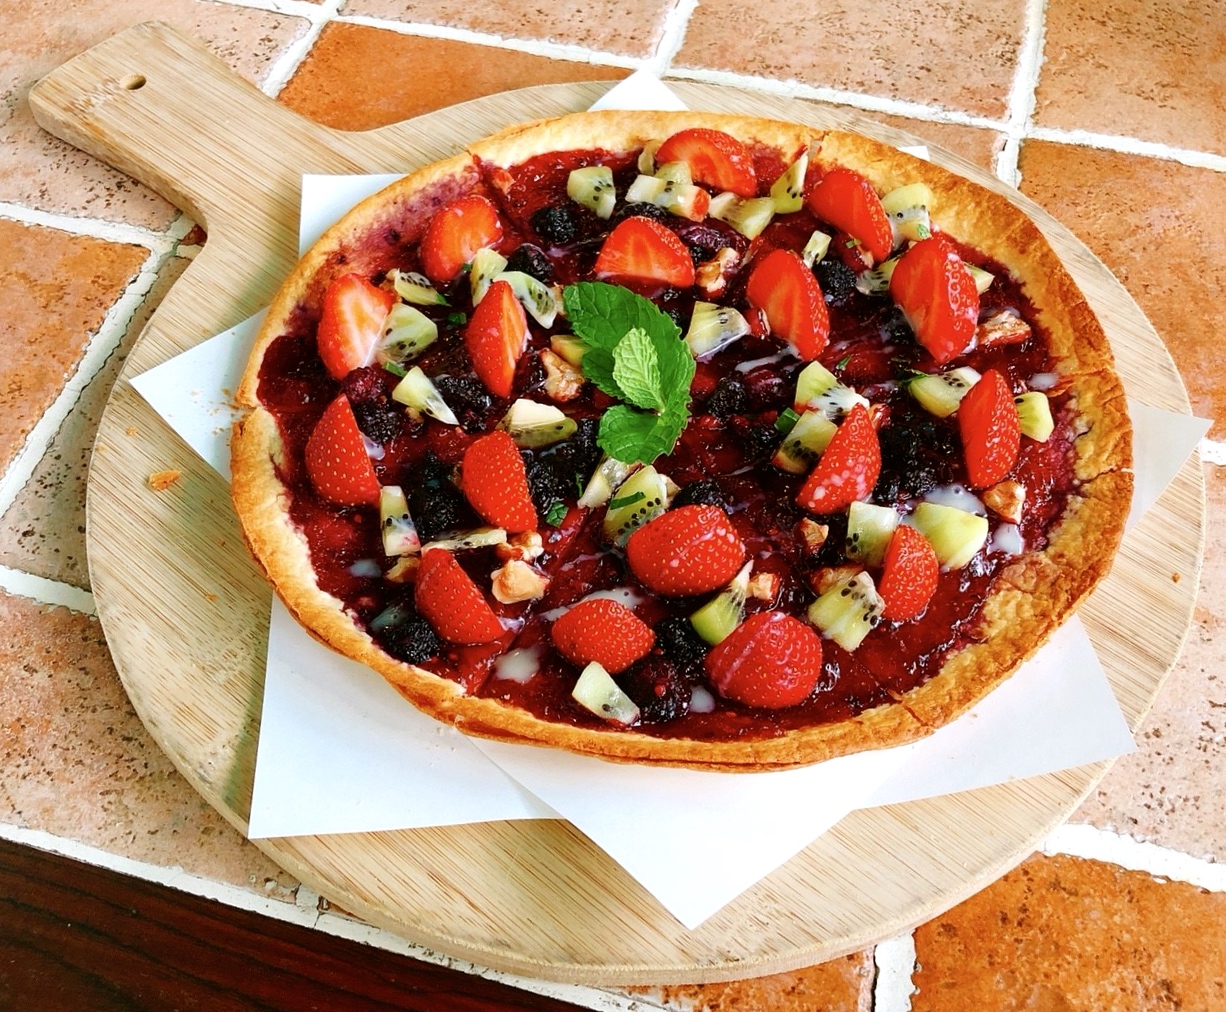 內湖景點,美莓繽紛披薩,莓圃休閒農園